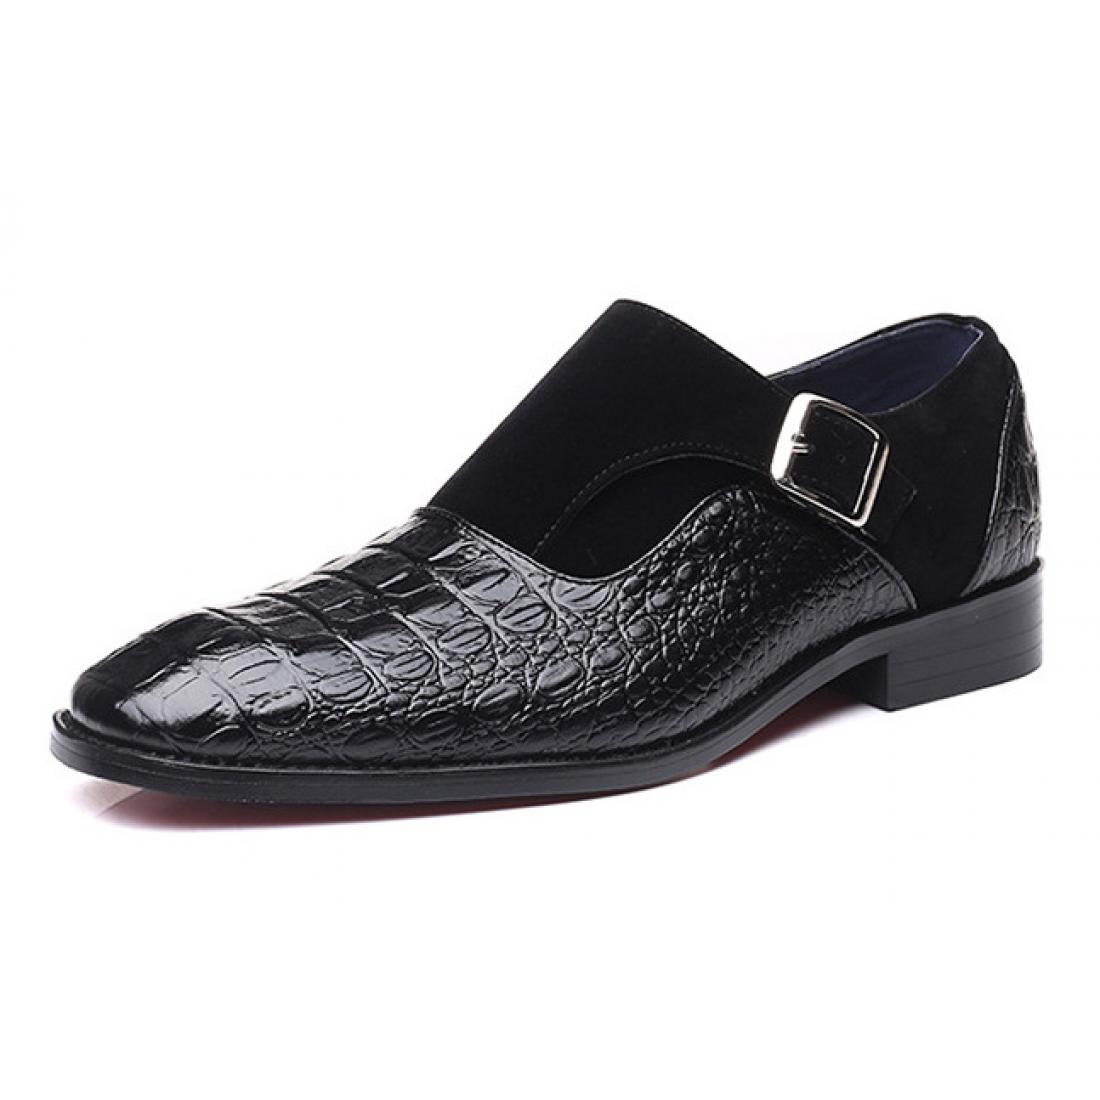 Black Croc Suede T Monk Straps Mens Loafers Flats Dress Shoes ...